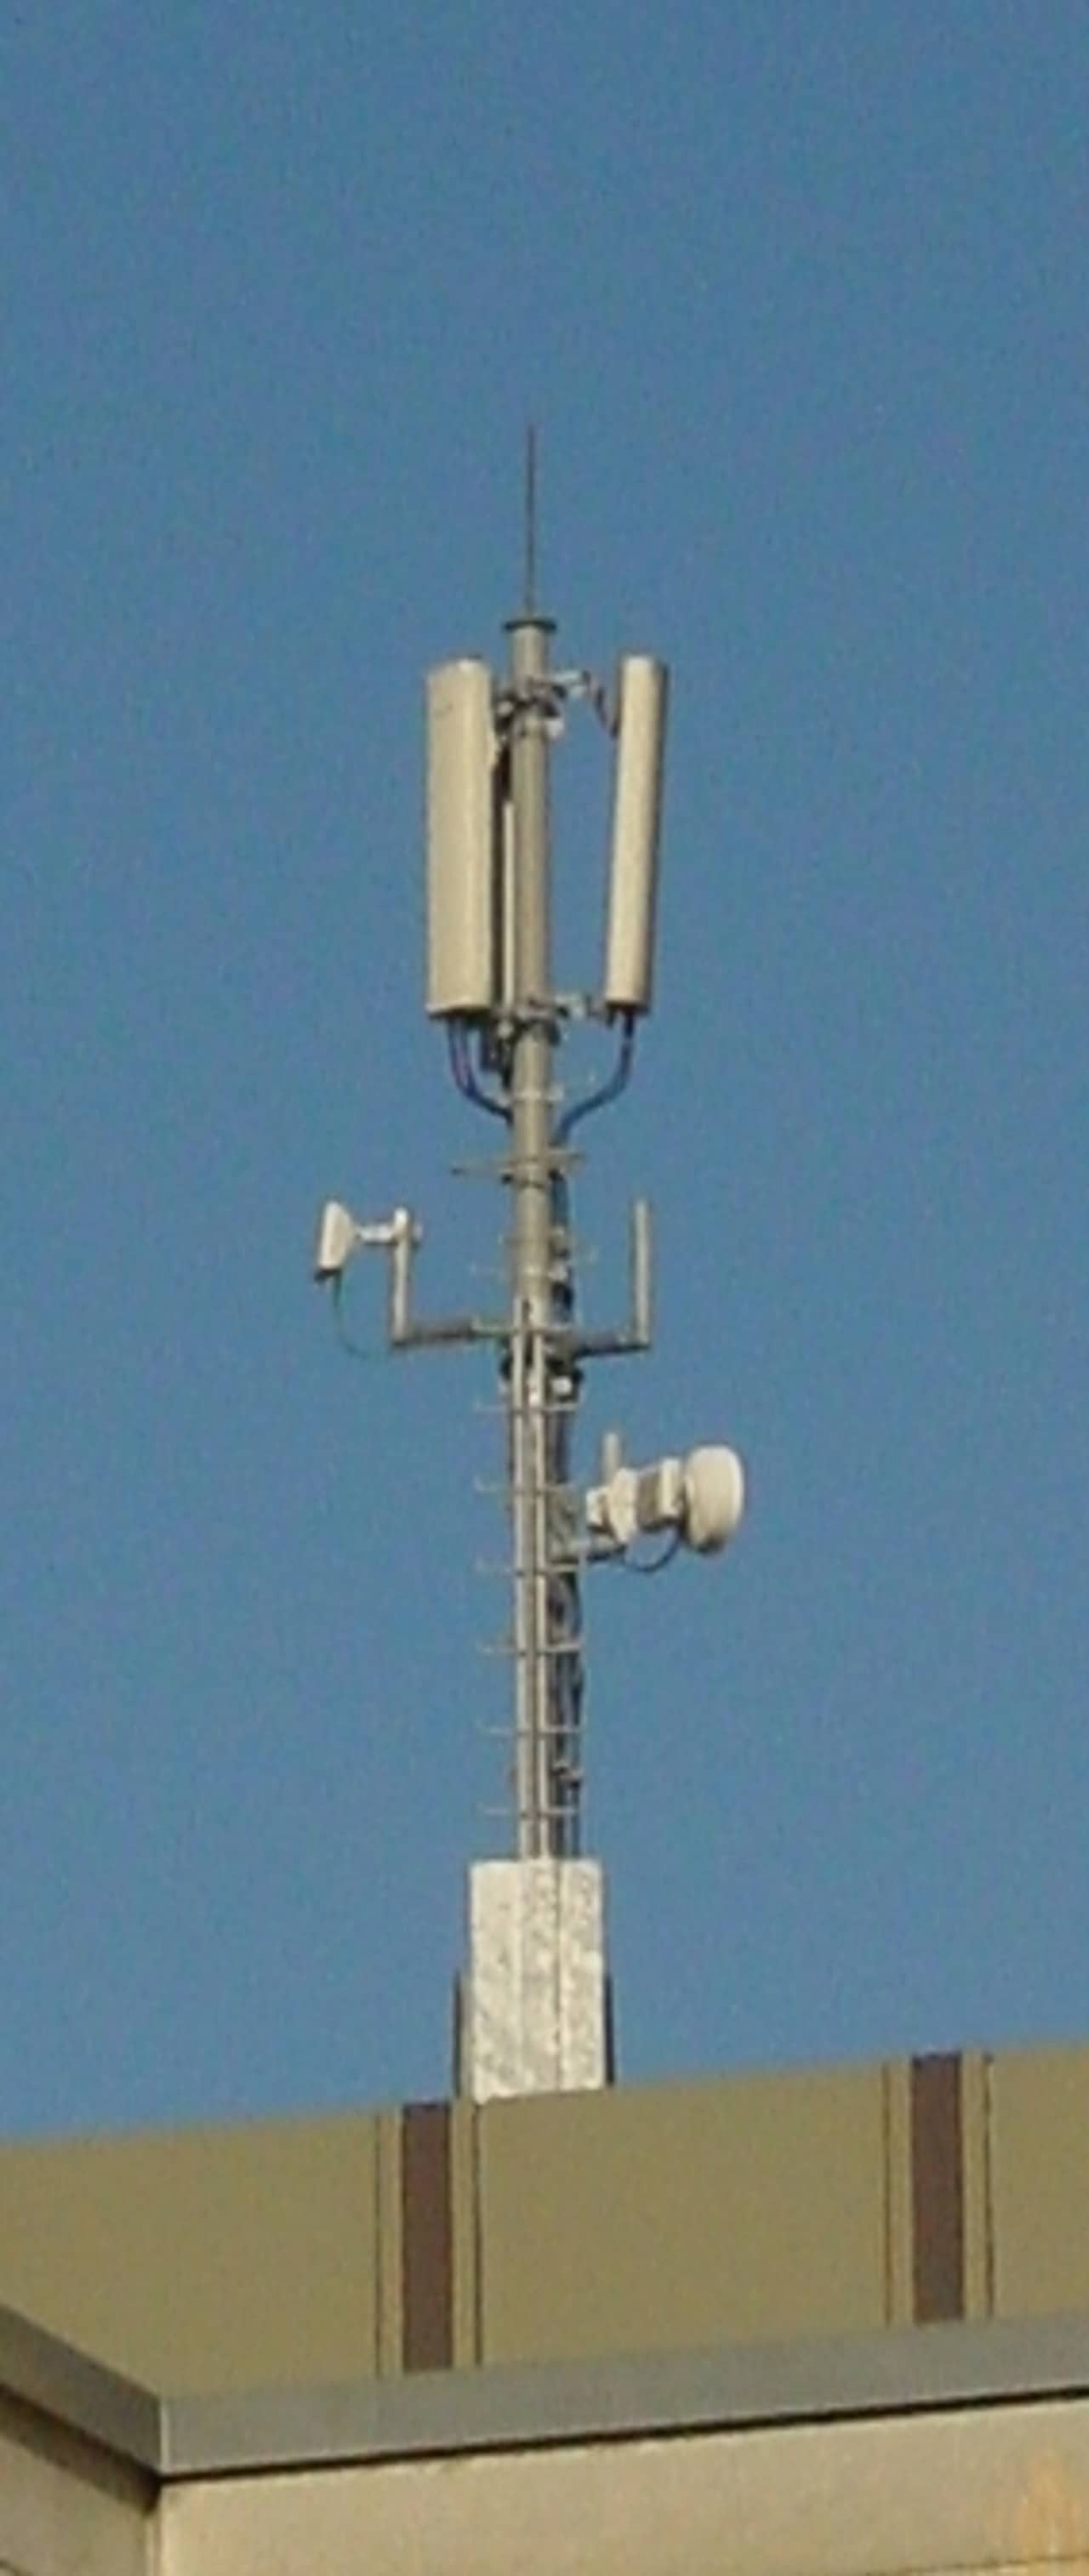 Flachdach mit einem Stahlmasten mit verschiedenen Mobilfunkantennen